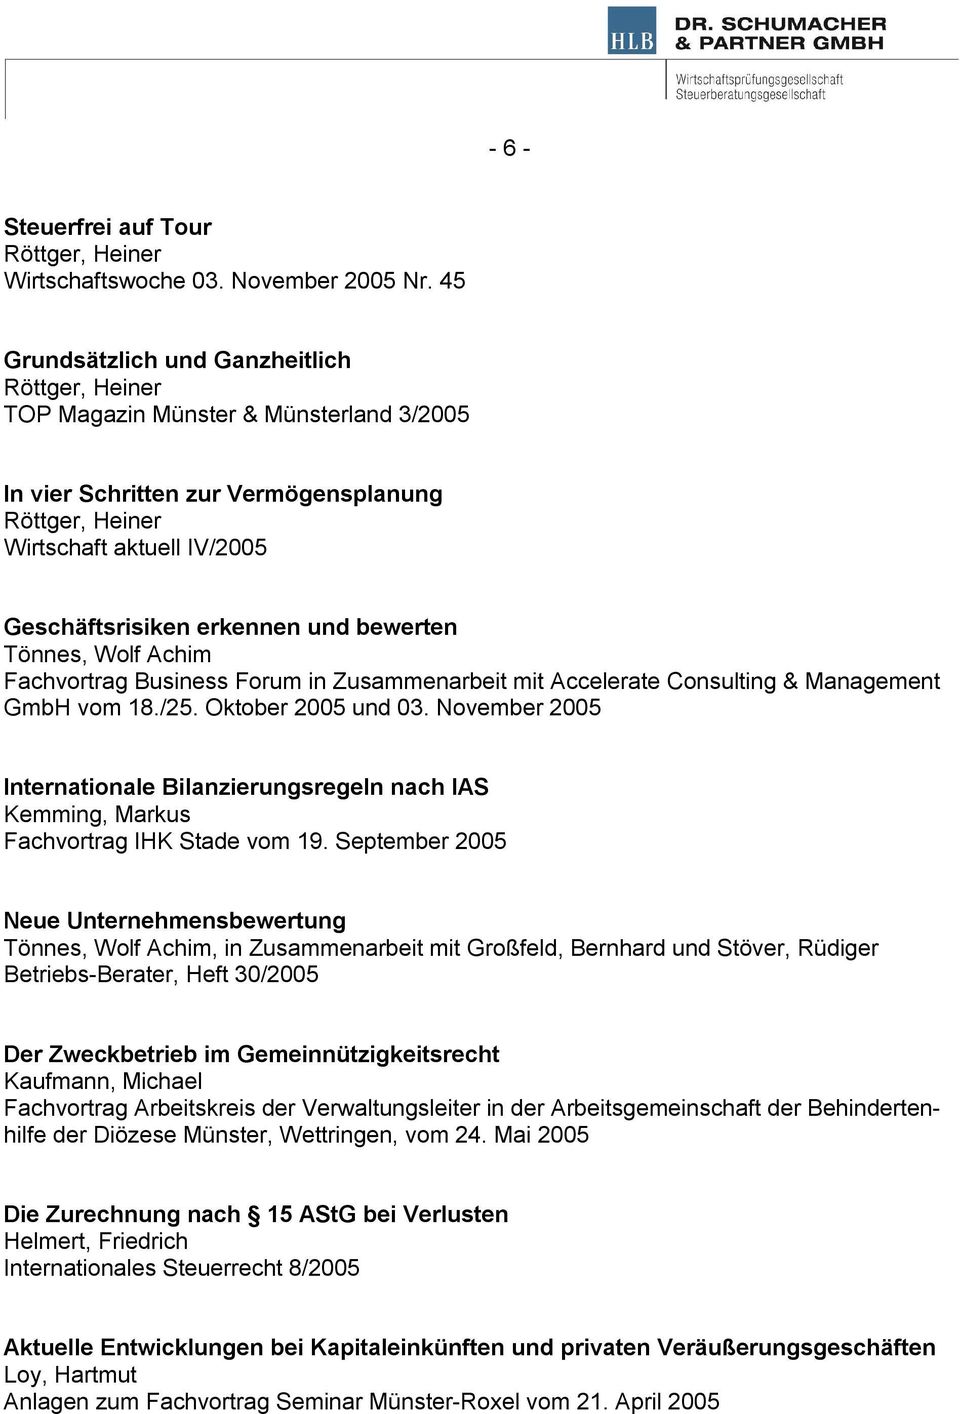 Fachvortrag Business Forum in Zusammenarbeit mit Accelerate Consulting & Management GmbH vom 18./25. Oktober 2005 und 03.